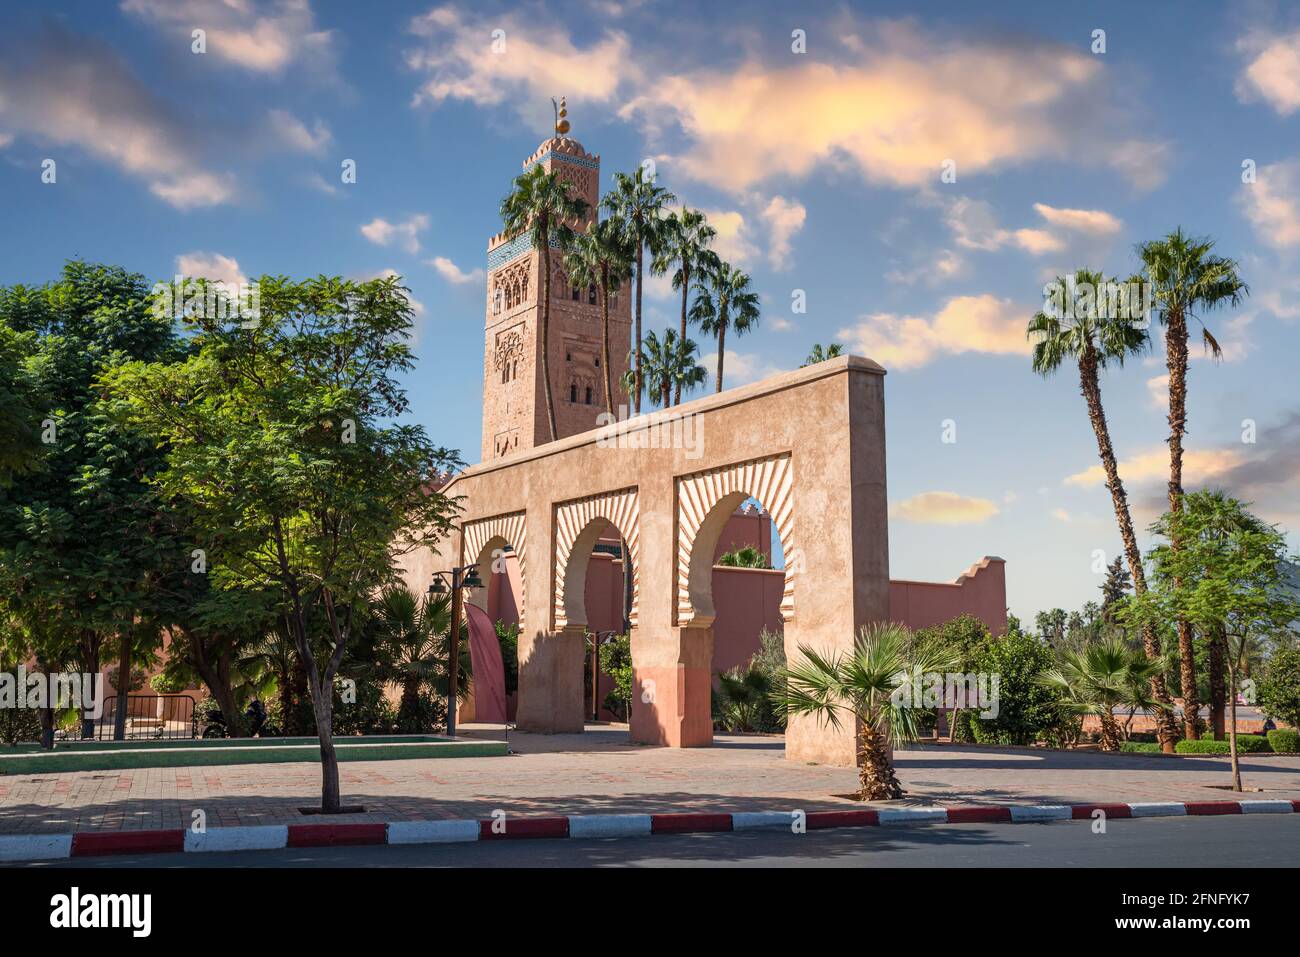 Kulturgebäude im arabischen Stil in Marrakesch Innenstadt in Marokko - Afrika Stockfoto